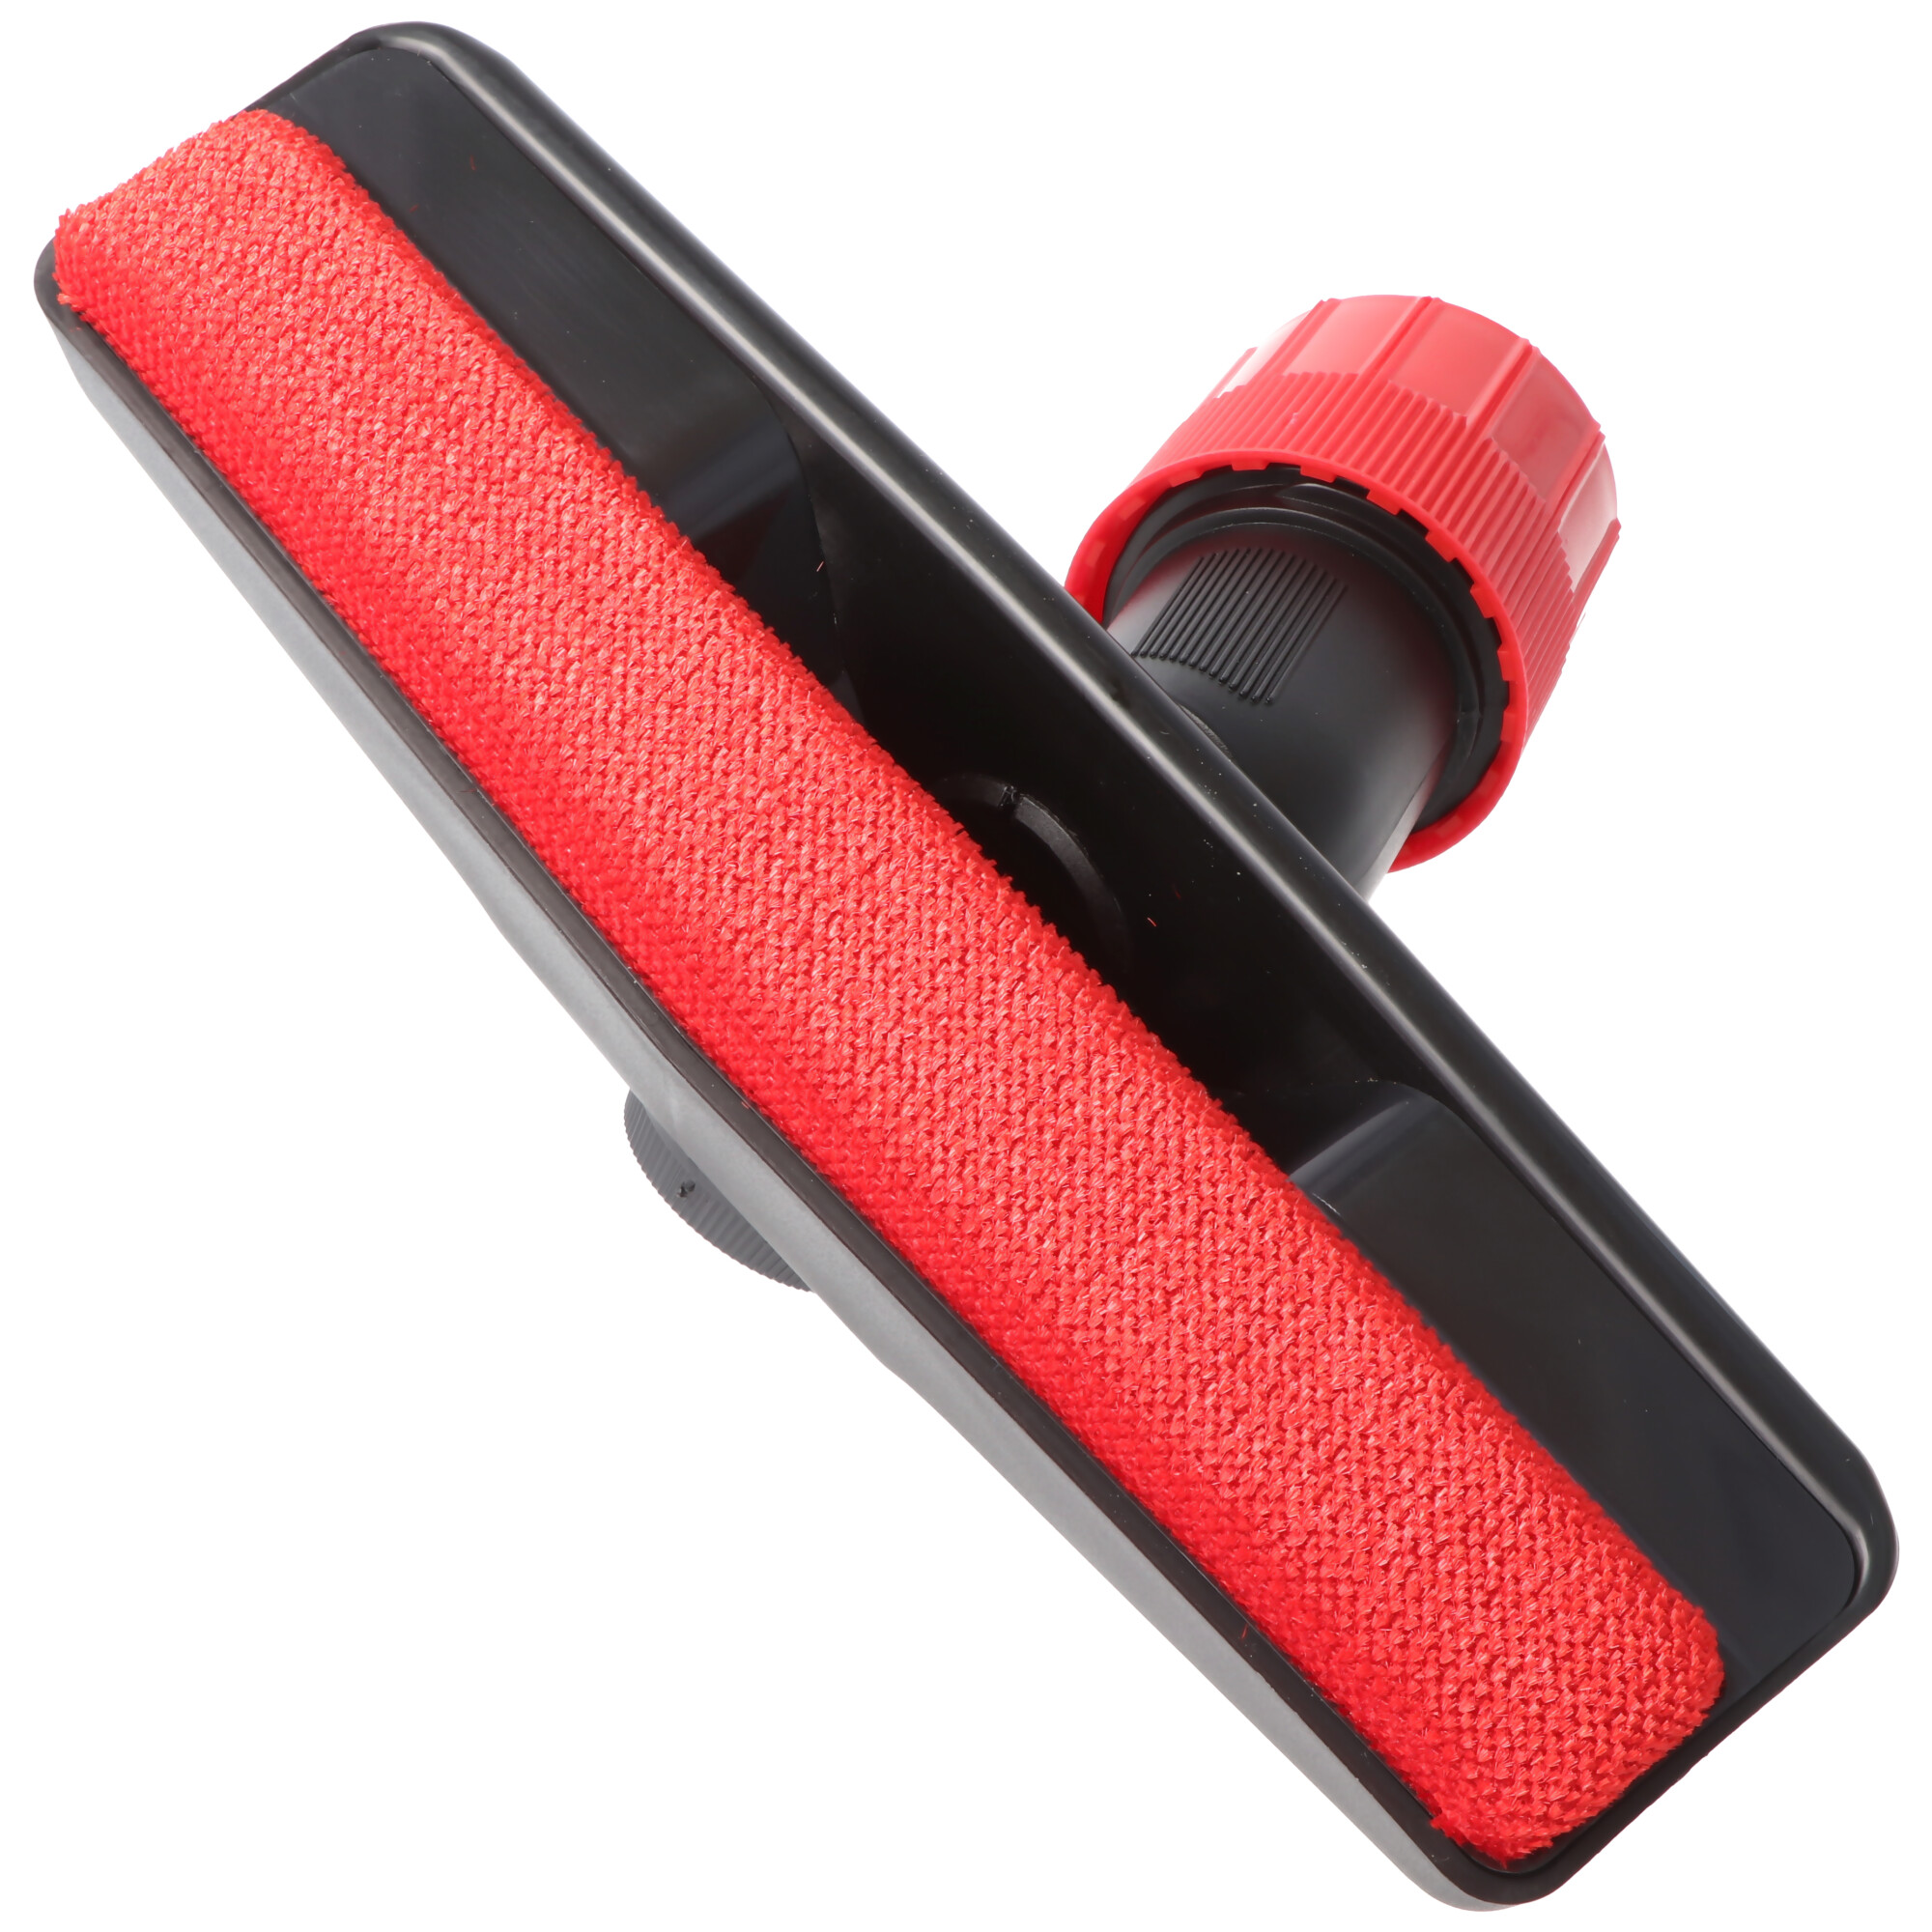 Tierhaar-Bodendüse für Staubsauger mit Rundanschluss 30mm, 32mm, 35mm, 37mm  rot schwarz | EPA-800112857